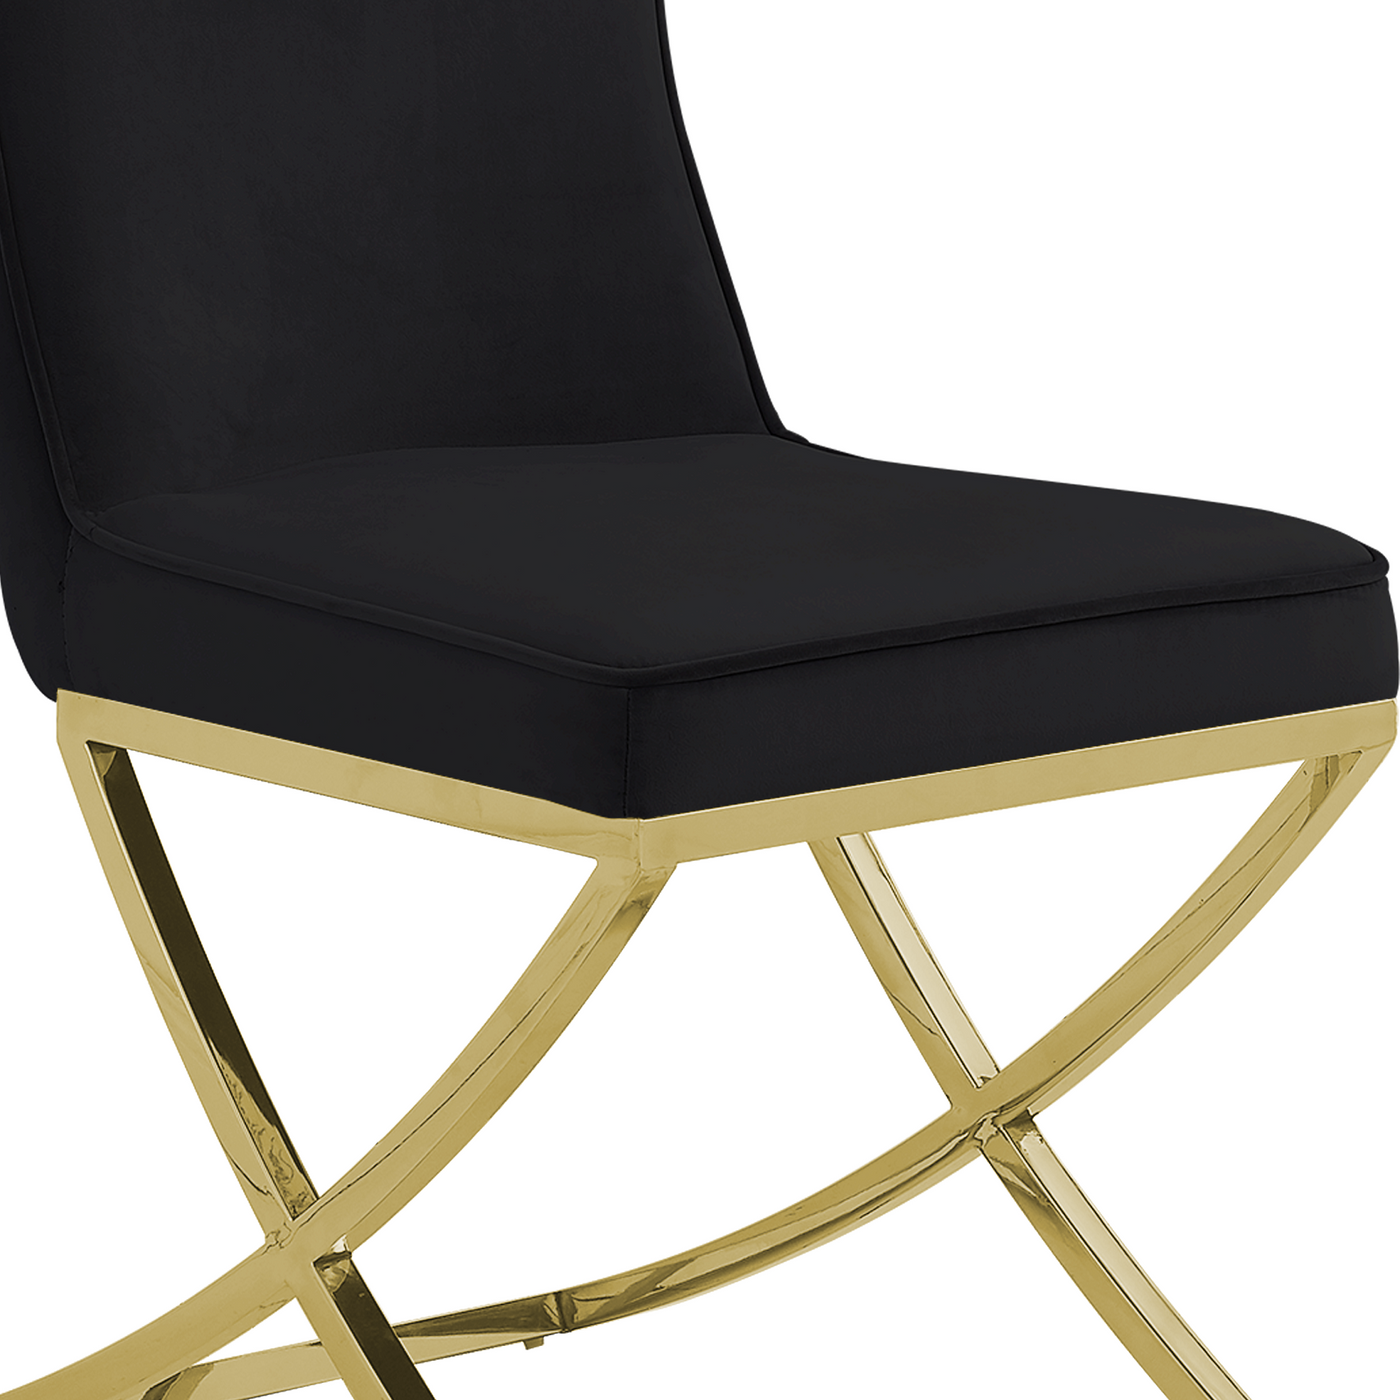 Versailles Chair Black Gold Legs